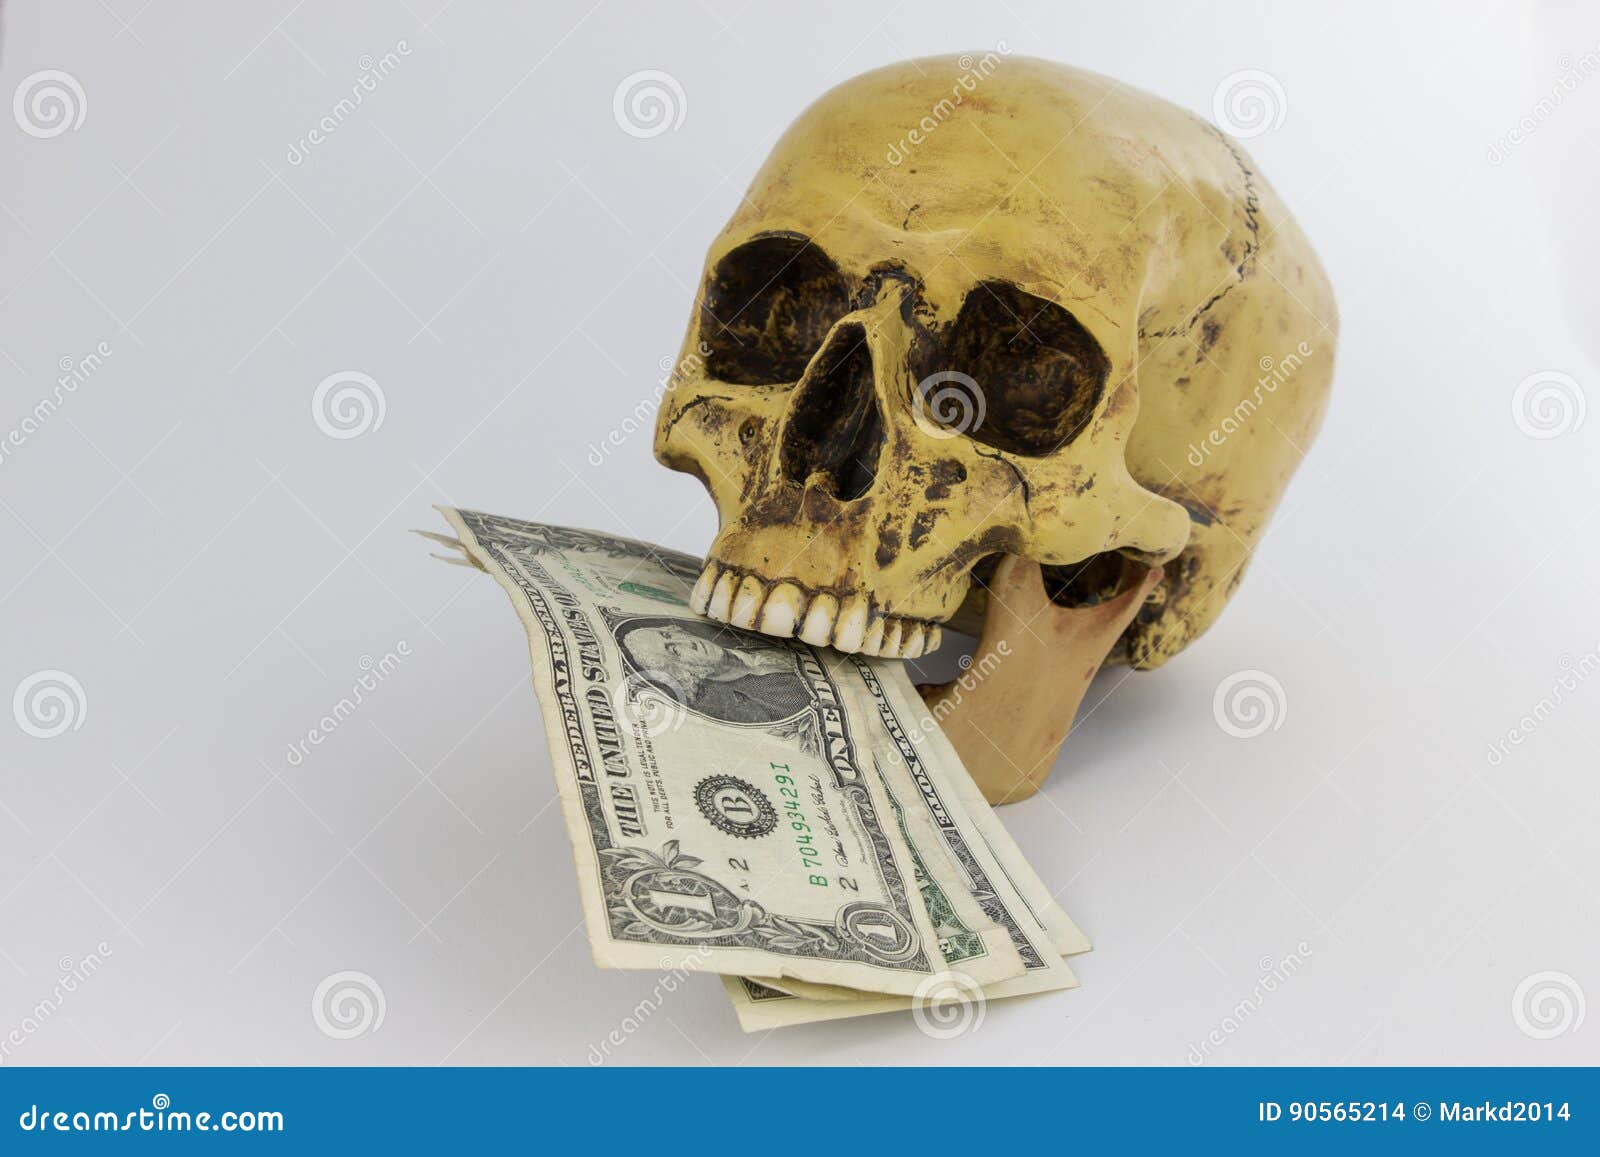 Человек дал денег и умер. Смерть и деньги. Смерть деньги туда. Богатство и смерть. Смерть и деньги картинки.